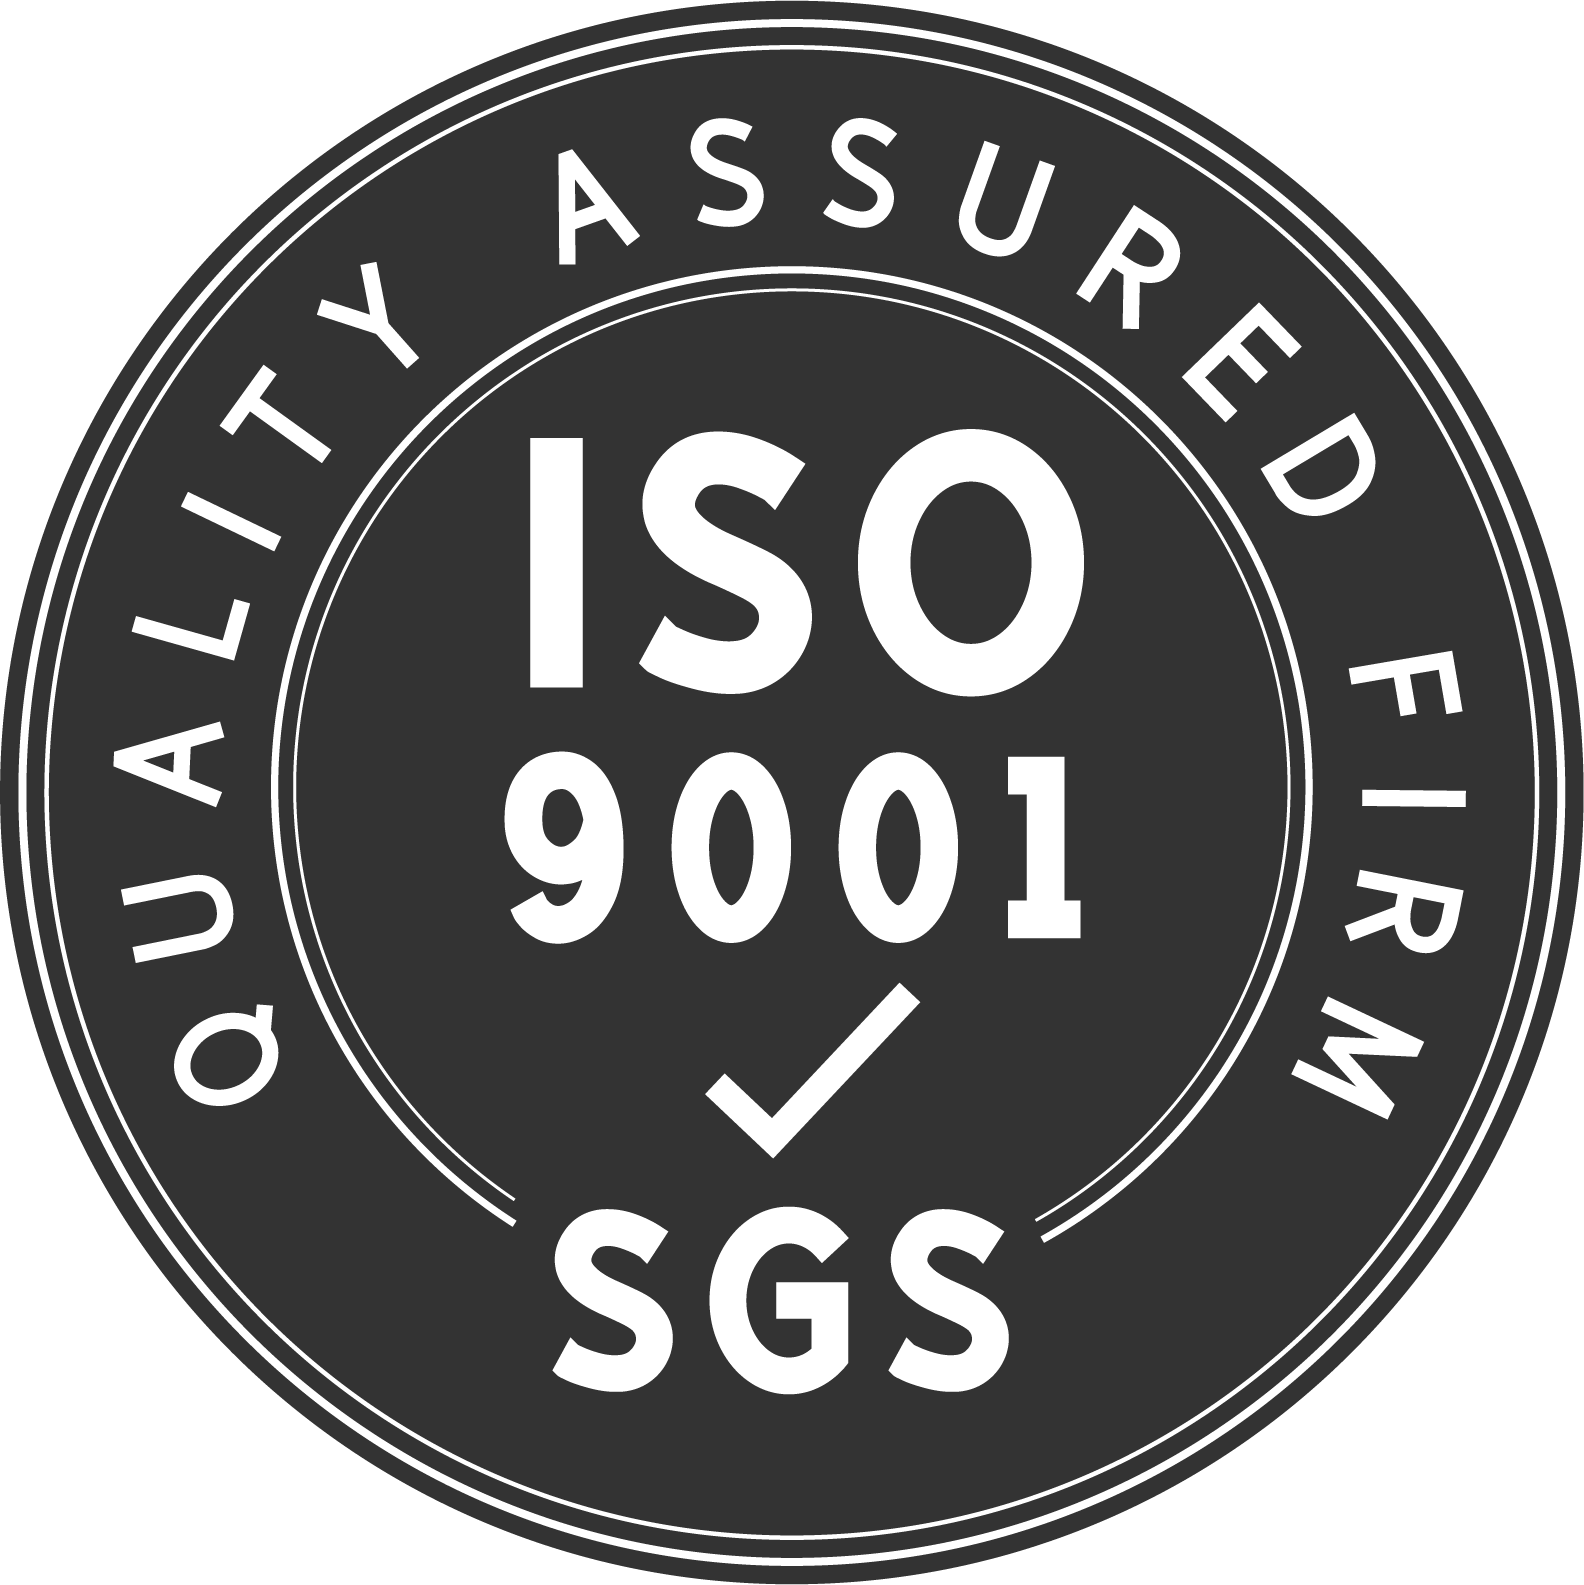 مصنعنا حاصل على شهادة ISO9001:2005 للحصول على منتجات عالية الجودة